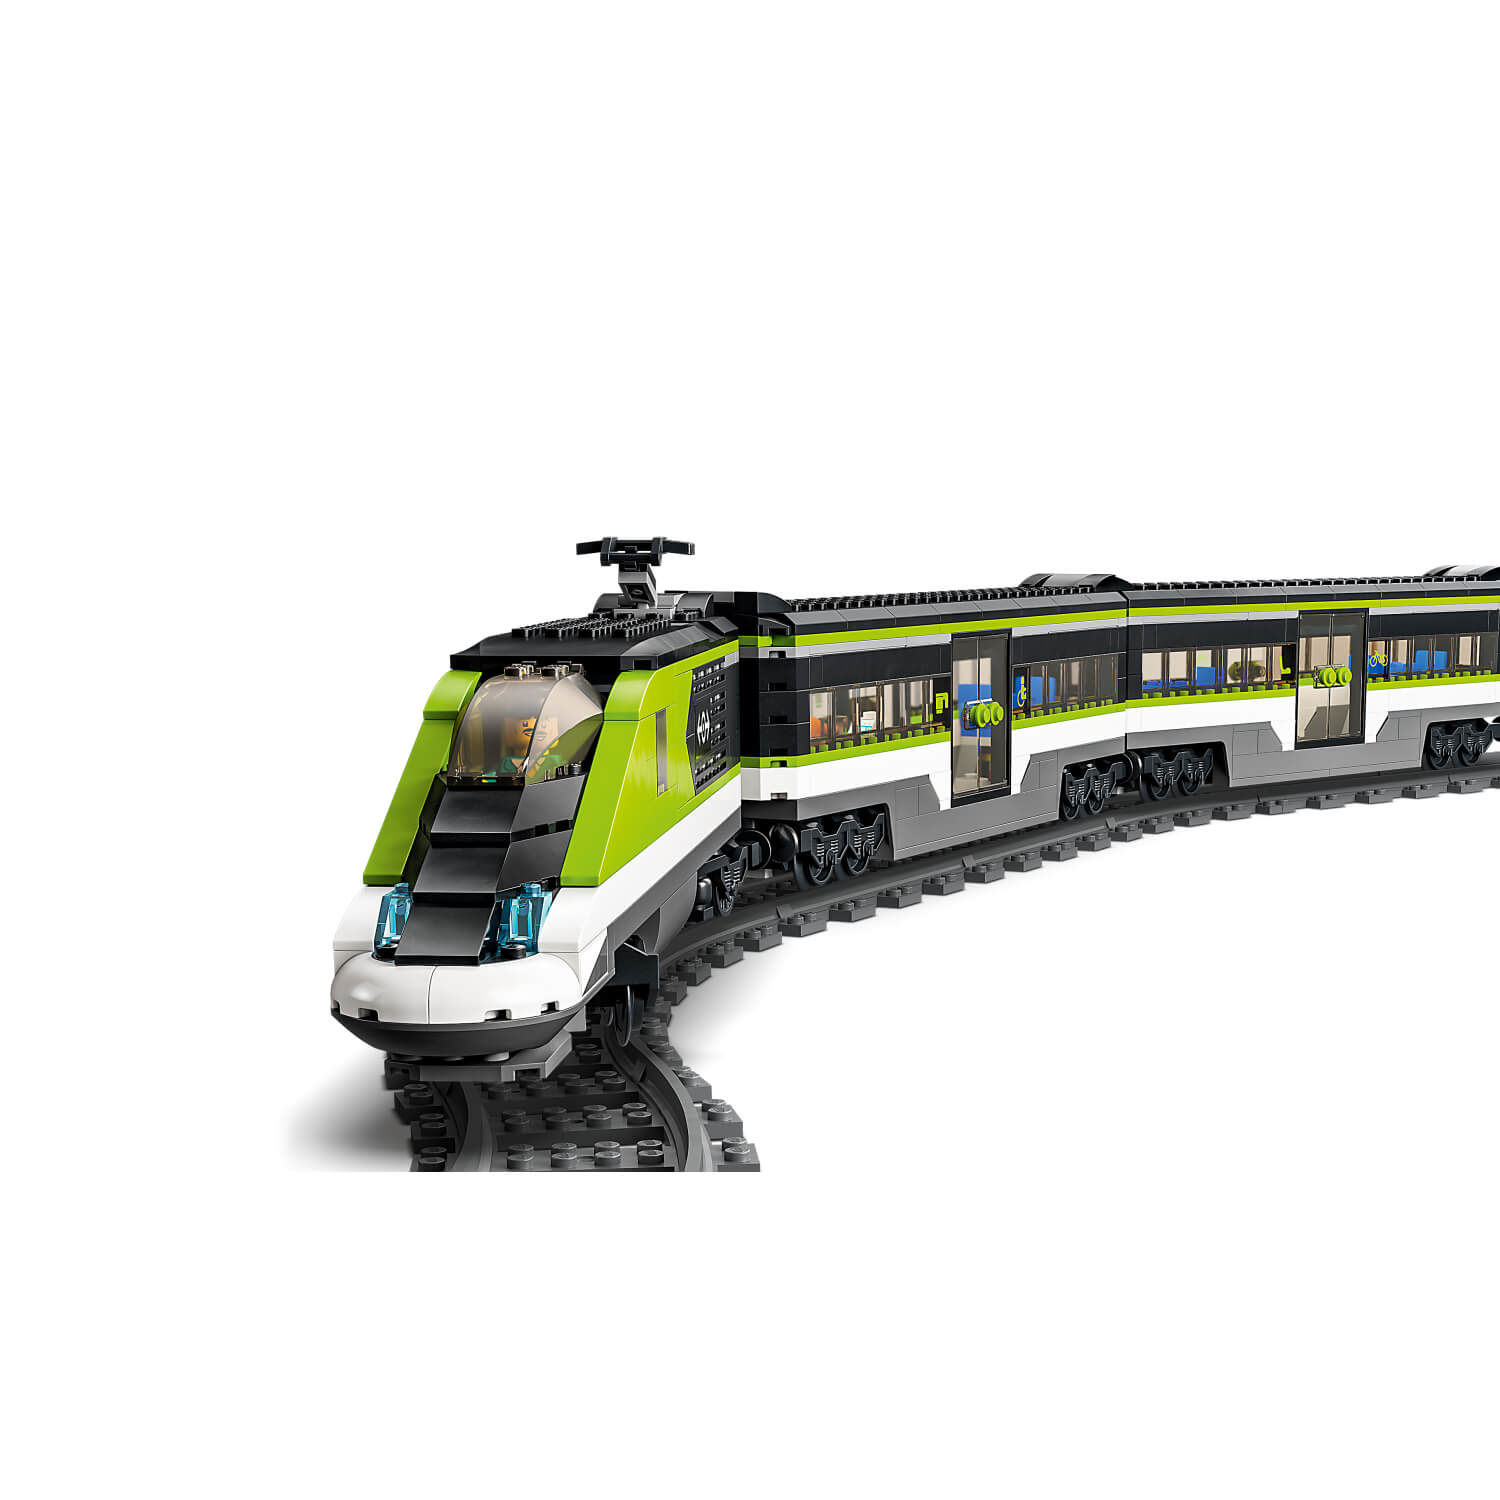 Lego 60337 Brzi putnički voz